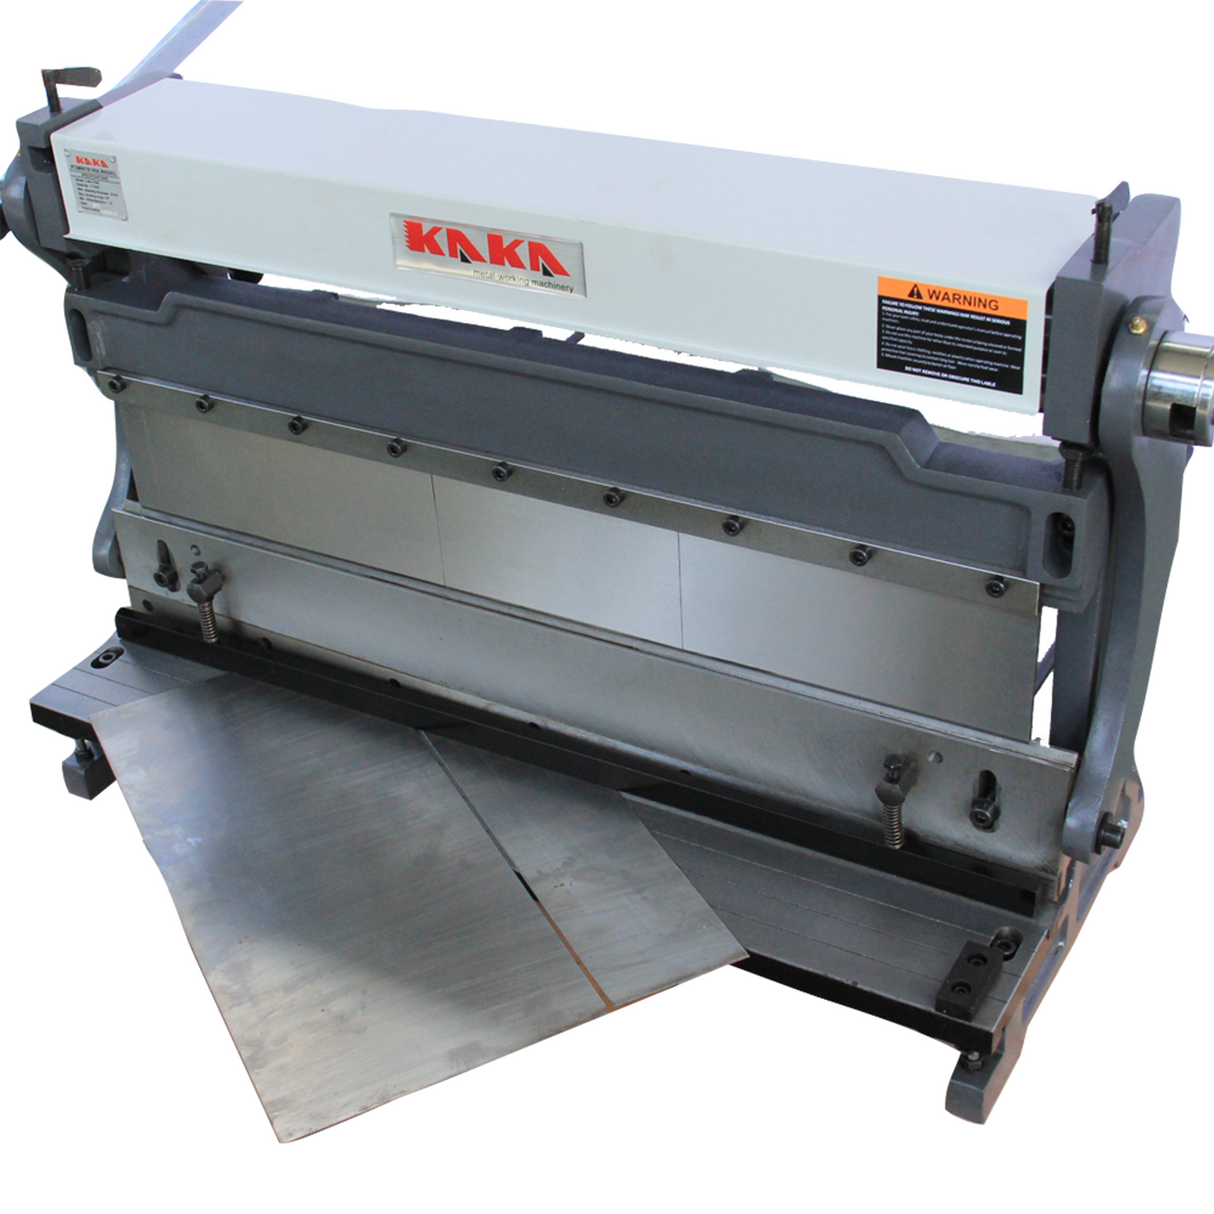 KANG Industrial 3-IN-1/40 Sheet Metal Fabrication Machines, Guillotine, Brake and Rolling Machine, 1016mm Combination Sheet Metal Brake